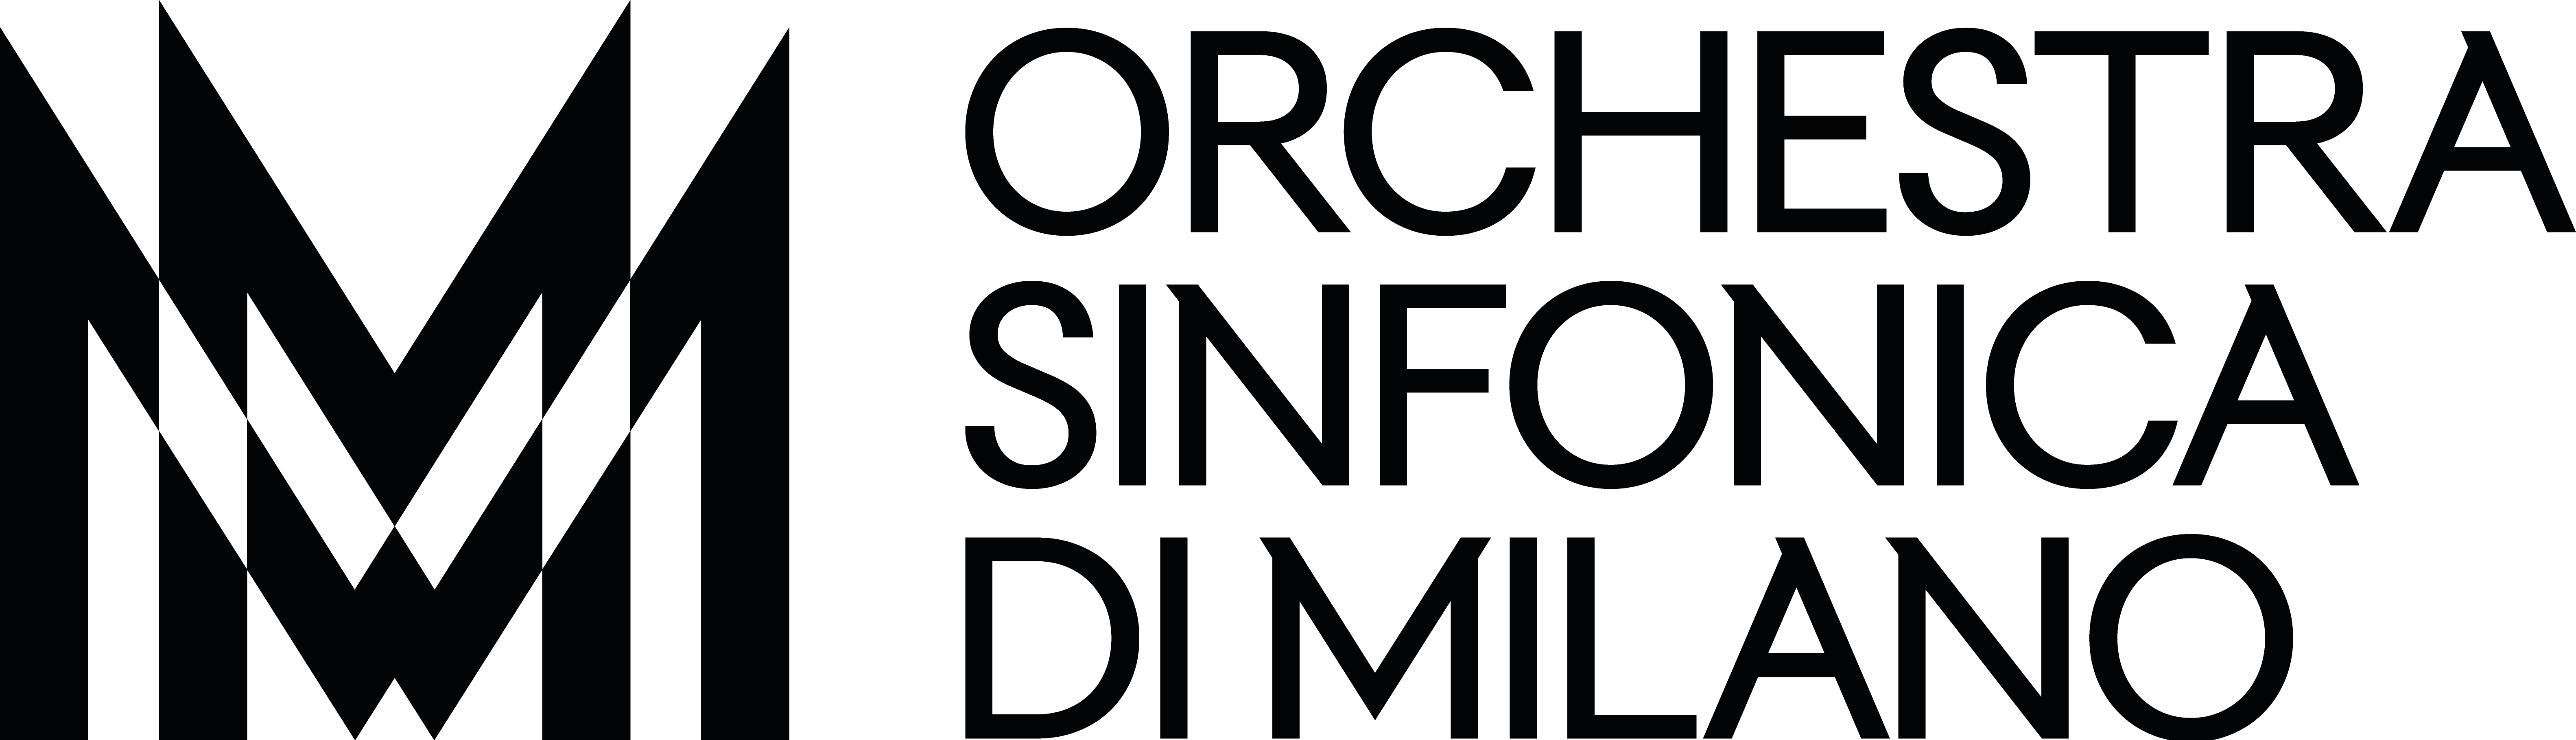 Orchestra Sinfonica di Milano